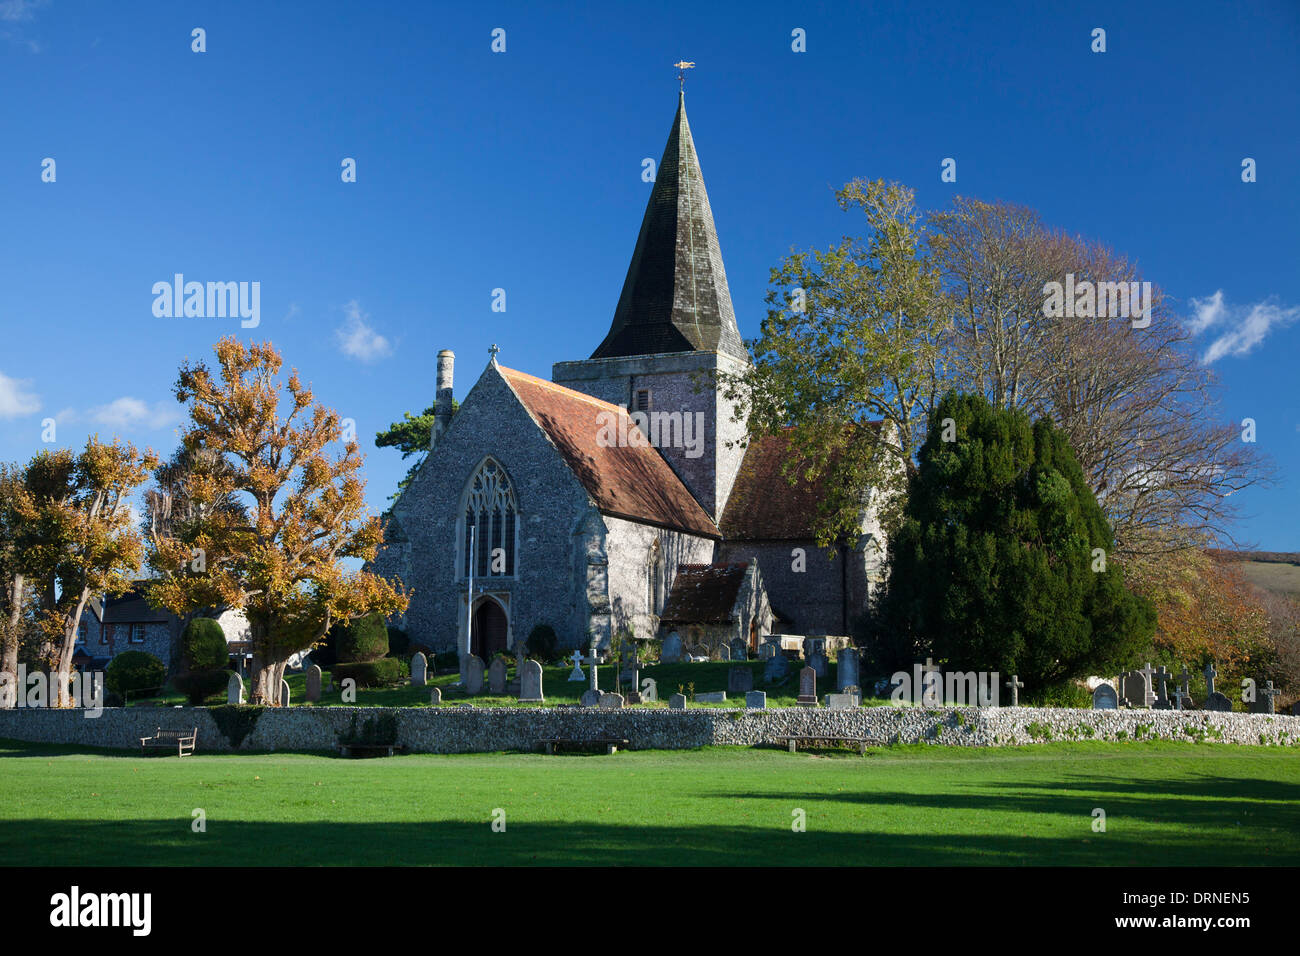 St Andrew's Church, également connu comme la Cathédrale du bas, 1 156 km, dans le comté de Sussex, Angleterre. Banque D'Images